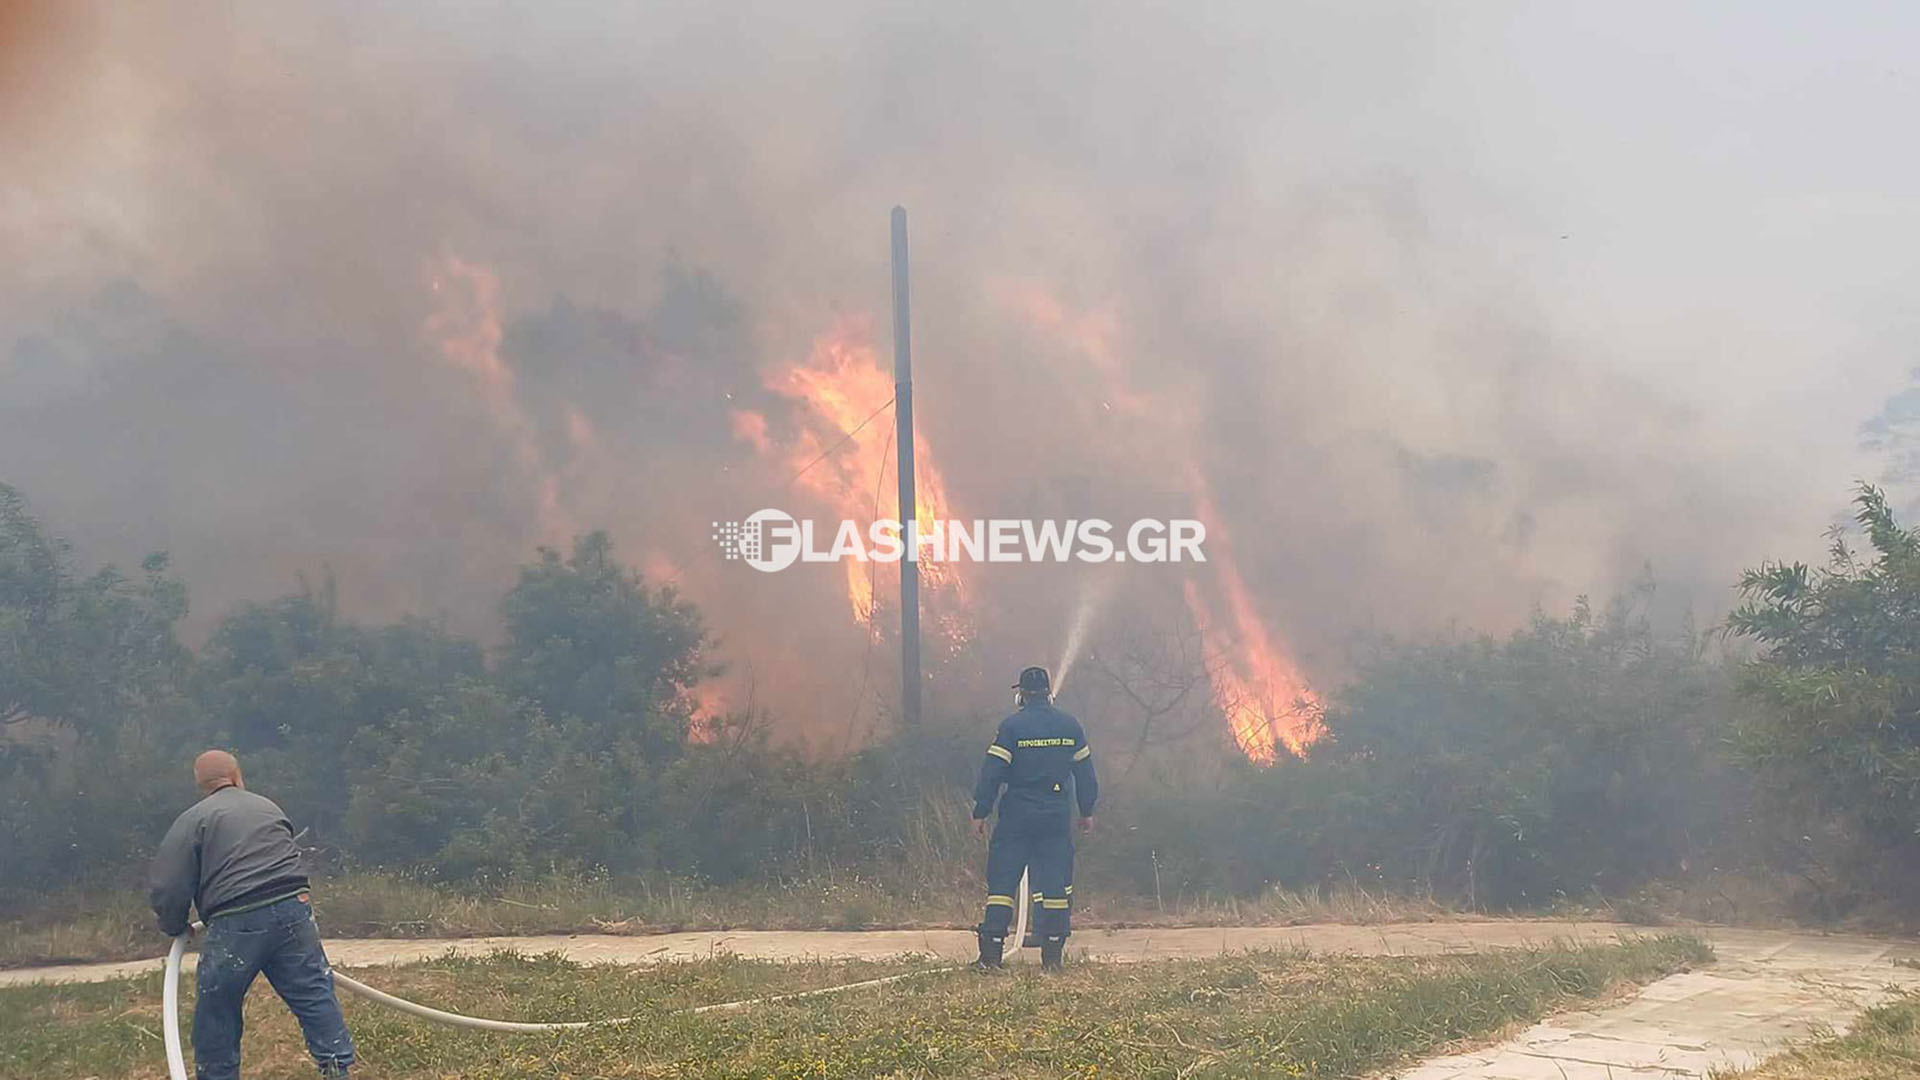 σούδα: μεγάλη φωτιά κοντά στον ναύσταθμο – «112» για εκκένωση του οικισμού (φωτογραφίες και βίντεο)